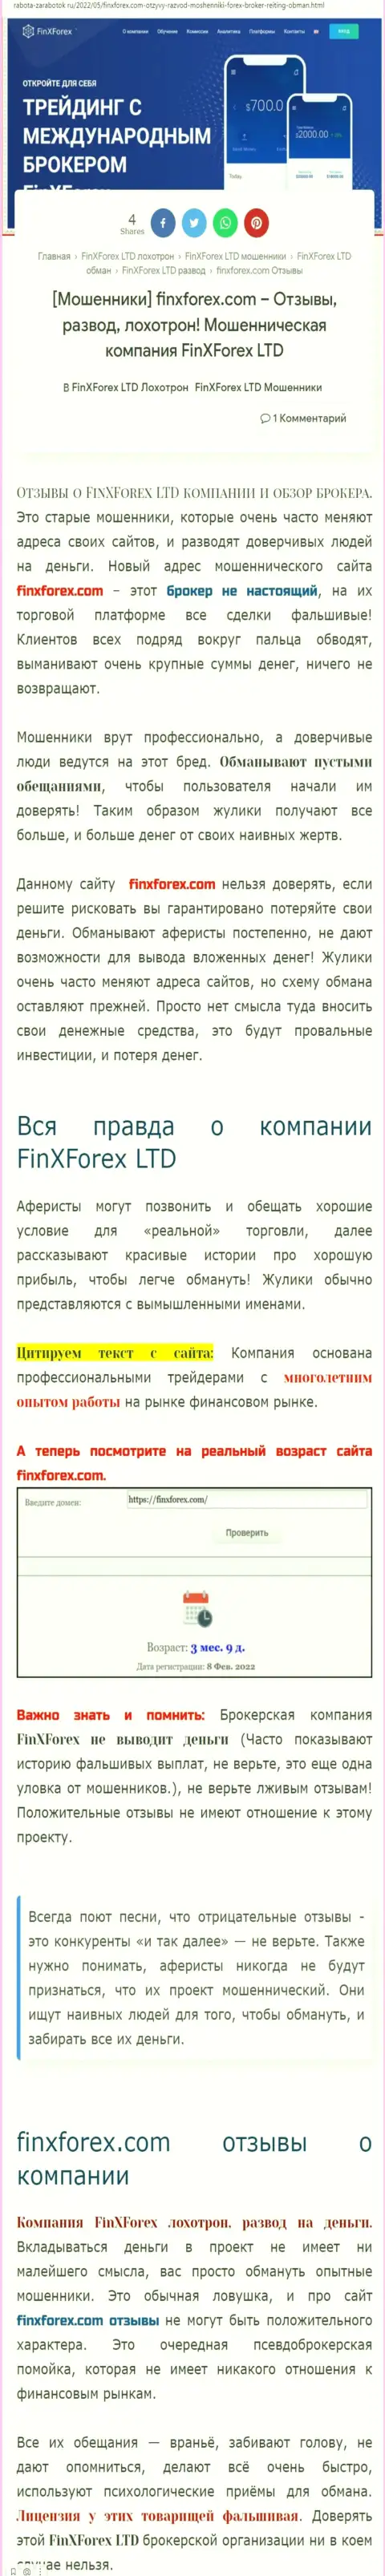 Автор статьи о Фин Икс Форекс пишет, что в компании FinXForex лохотронят